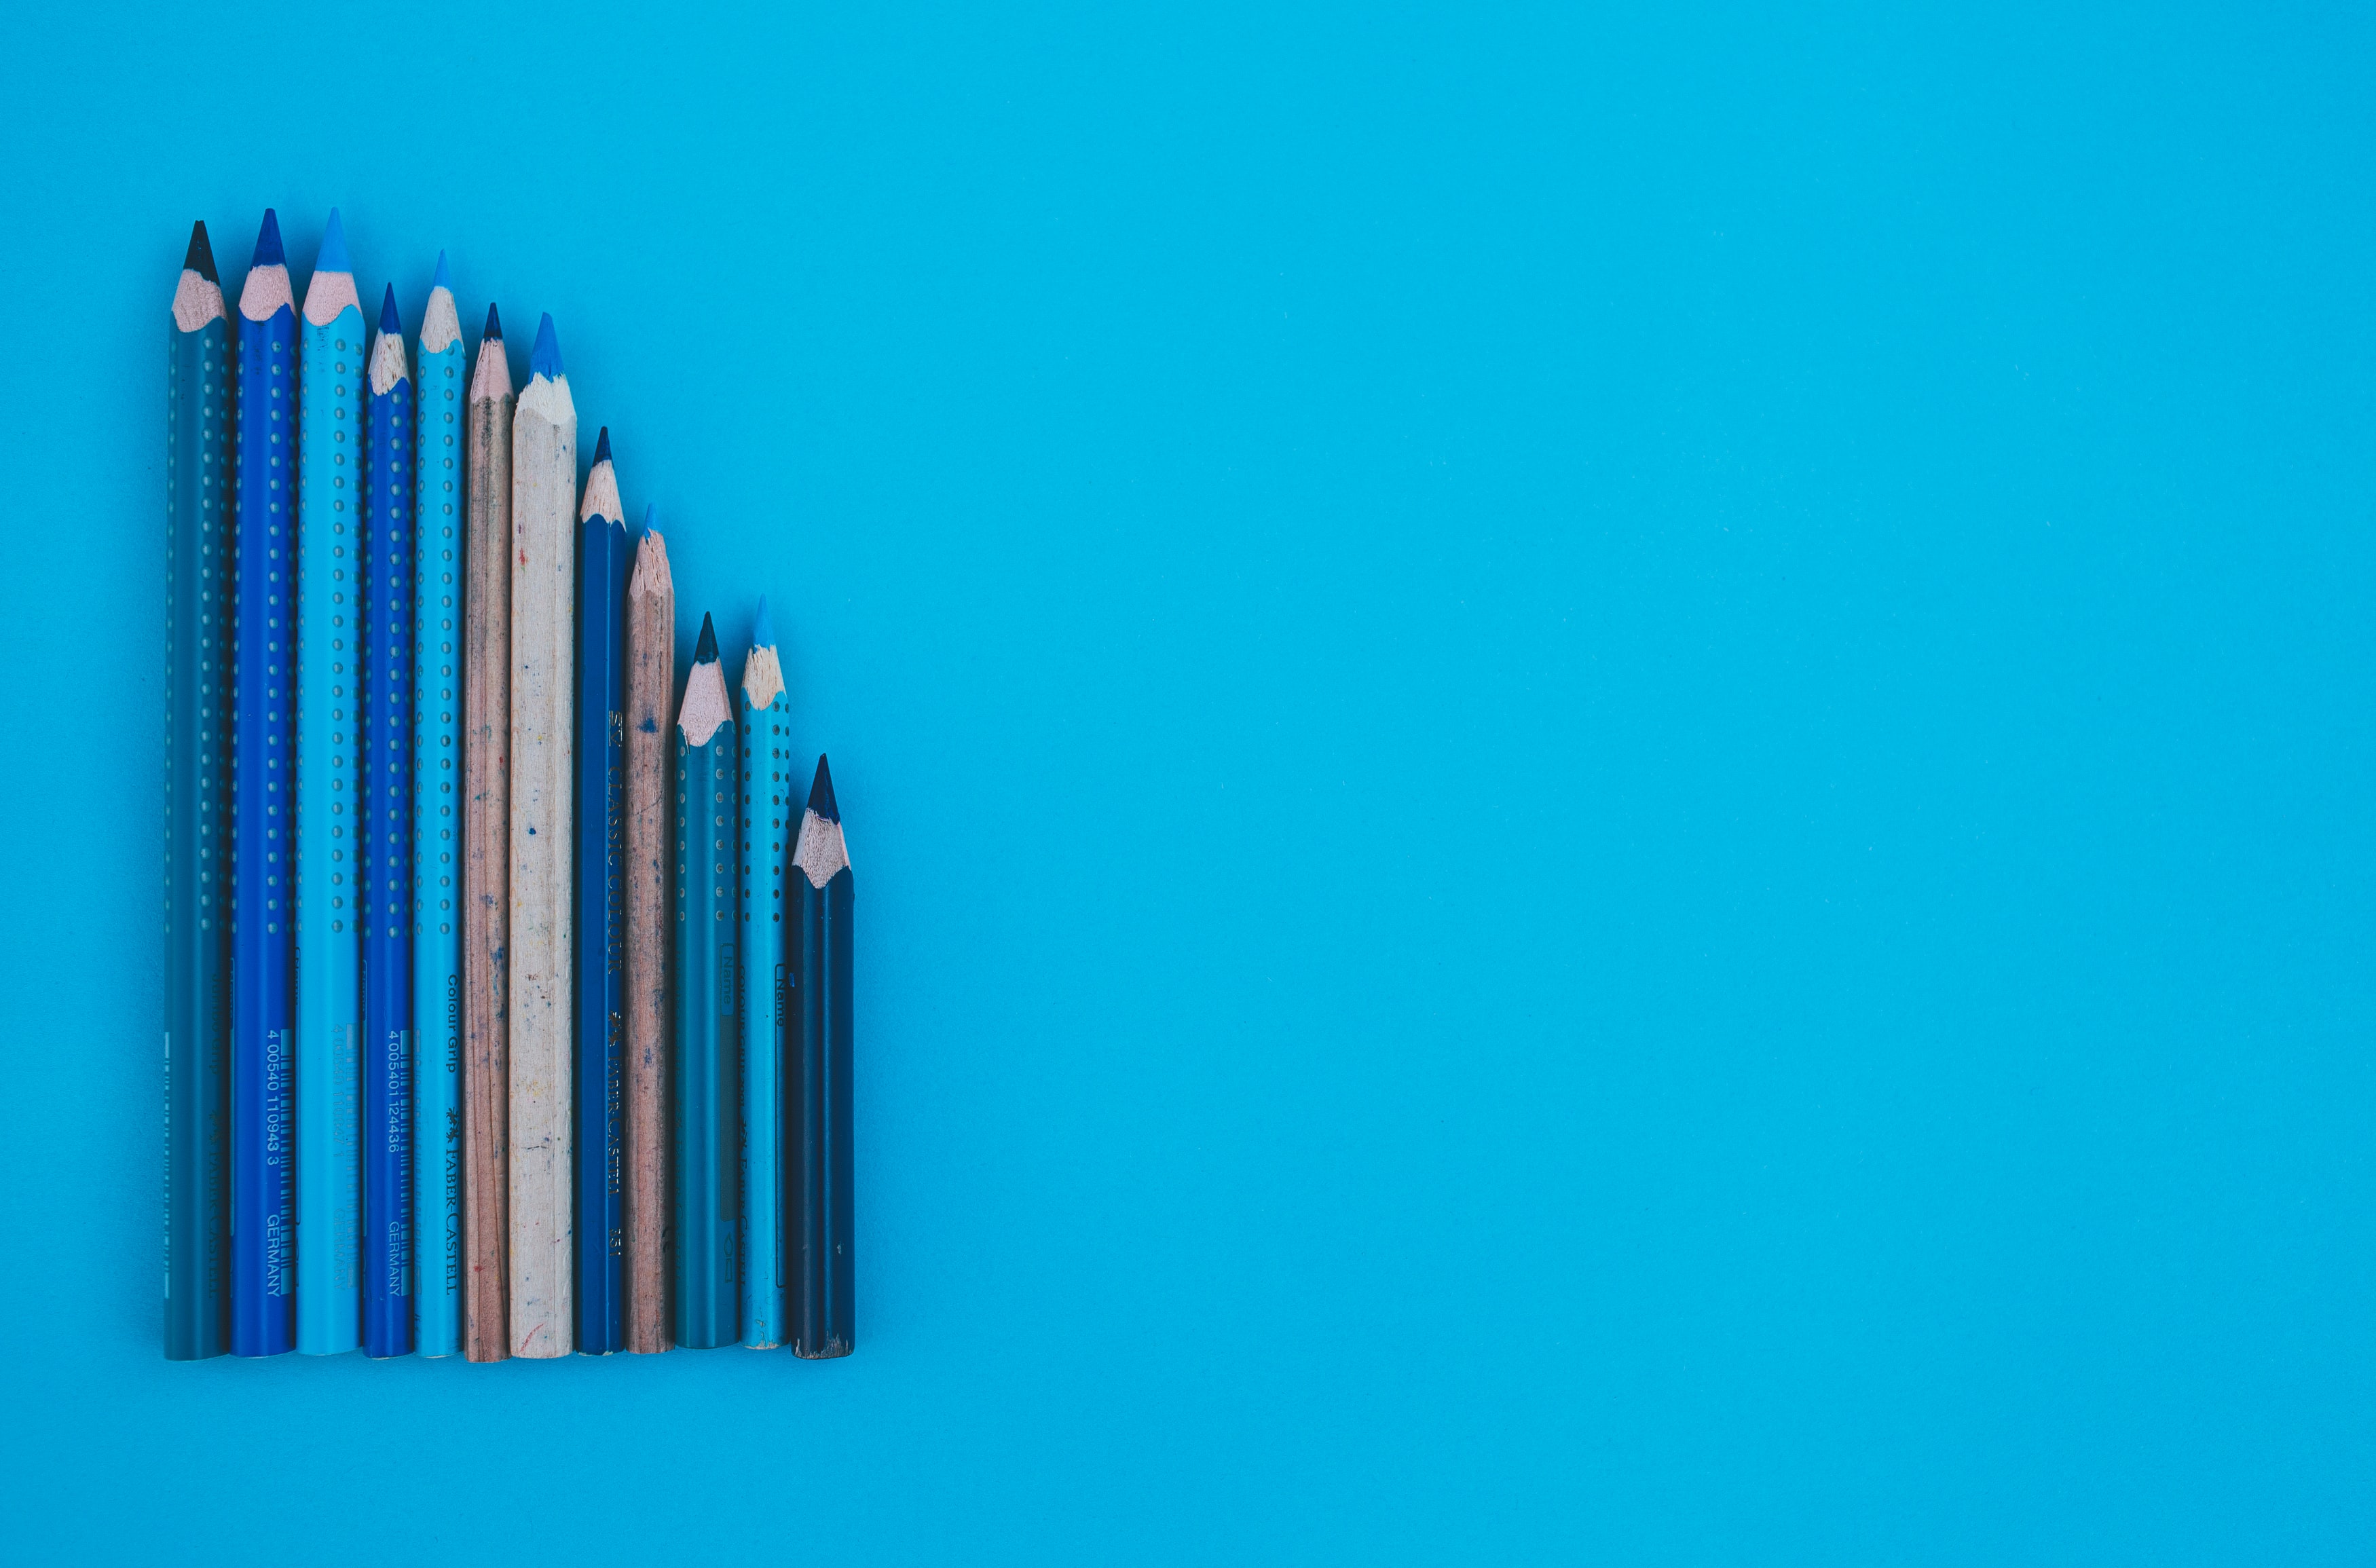 Une gamme de crayons de différentes longueurs.